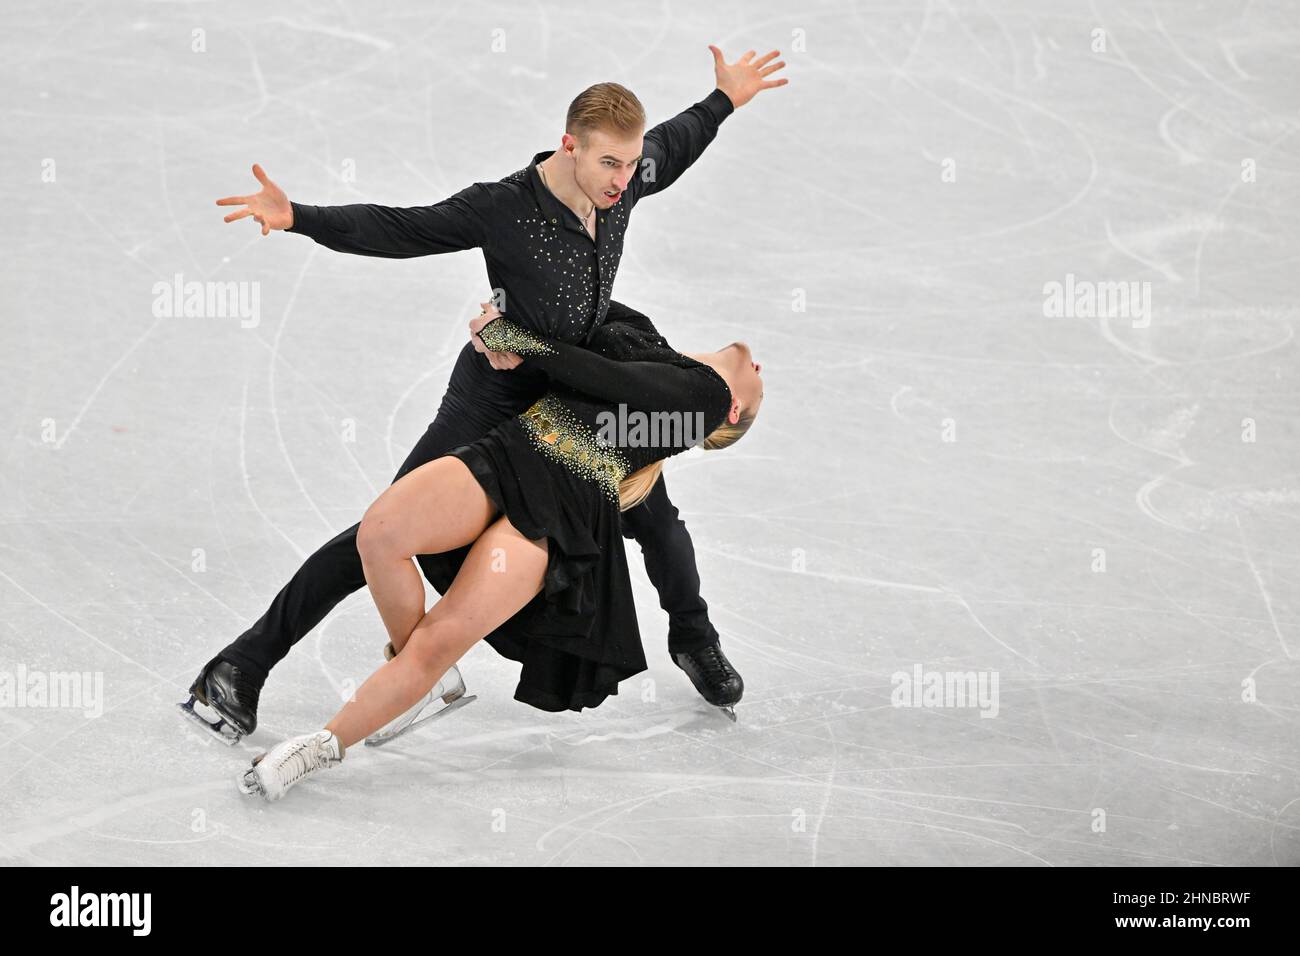 BEIJING, CHINA - FEBRUARY 14: Natalie Taschlerova and Filip Taschler of Team Czech Republic skate during the Ice Dance Free Dance on day ten of the Be Stock Photo